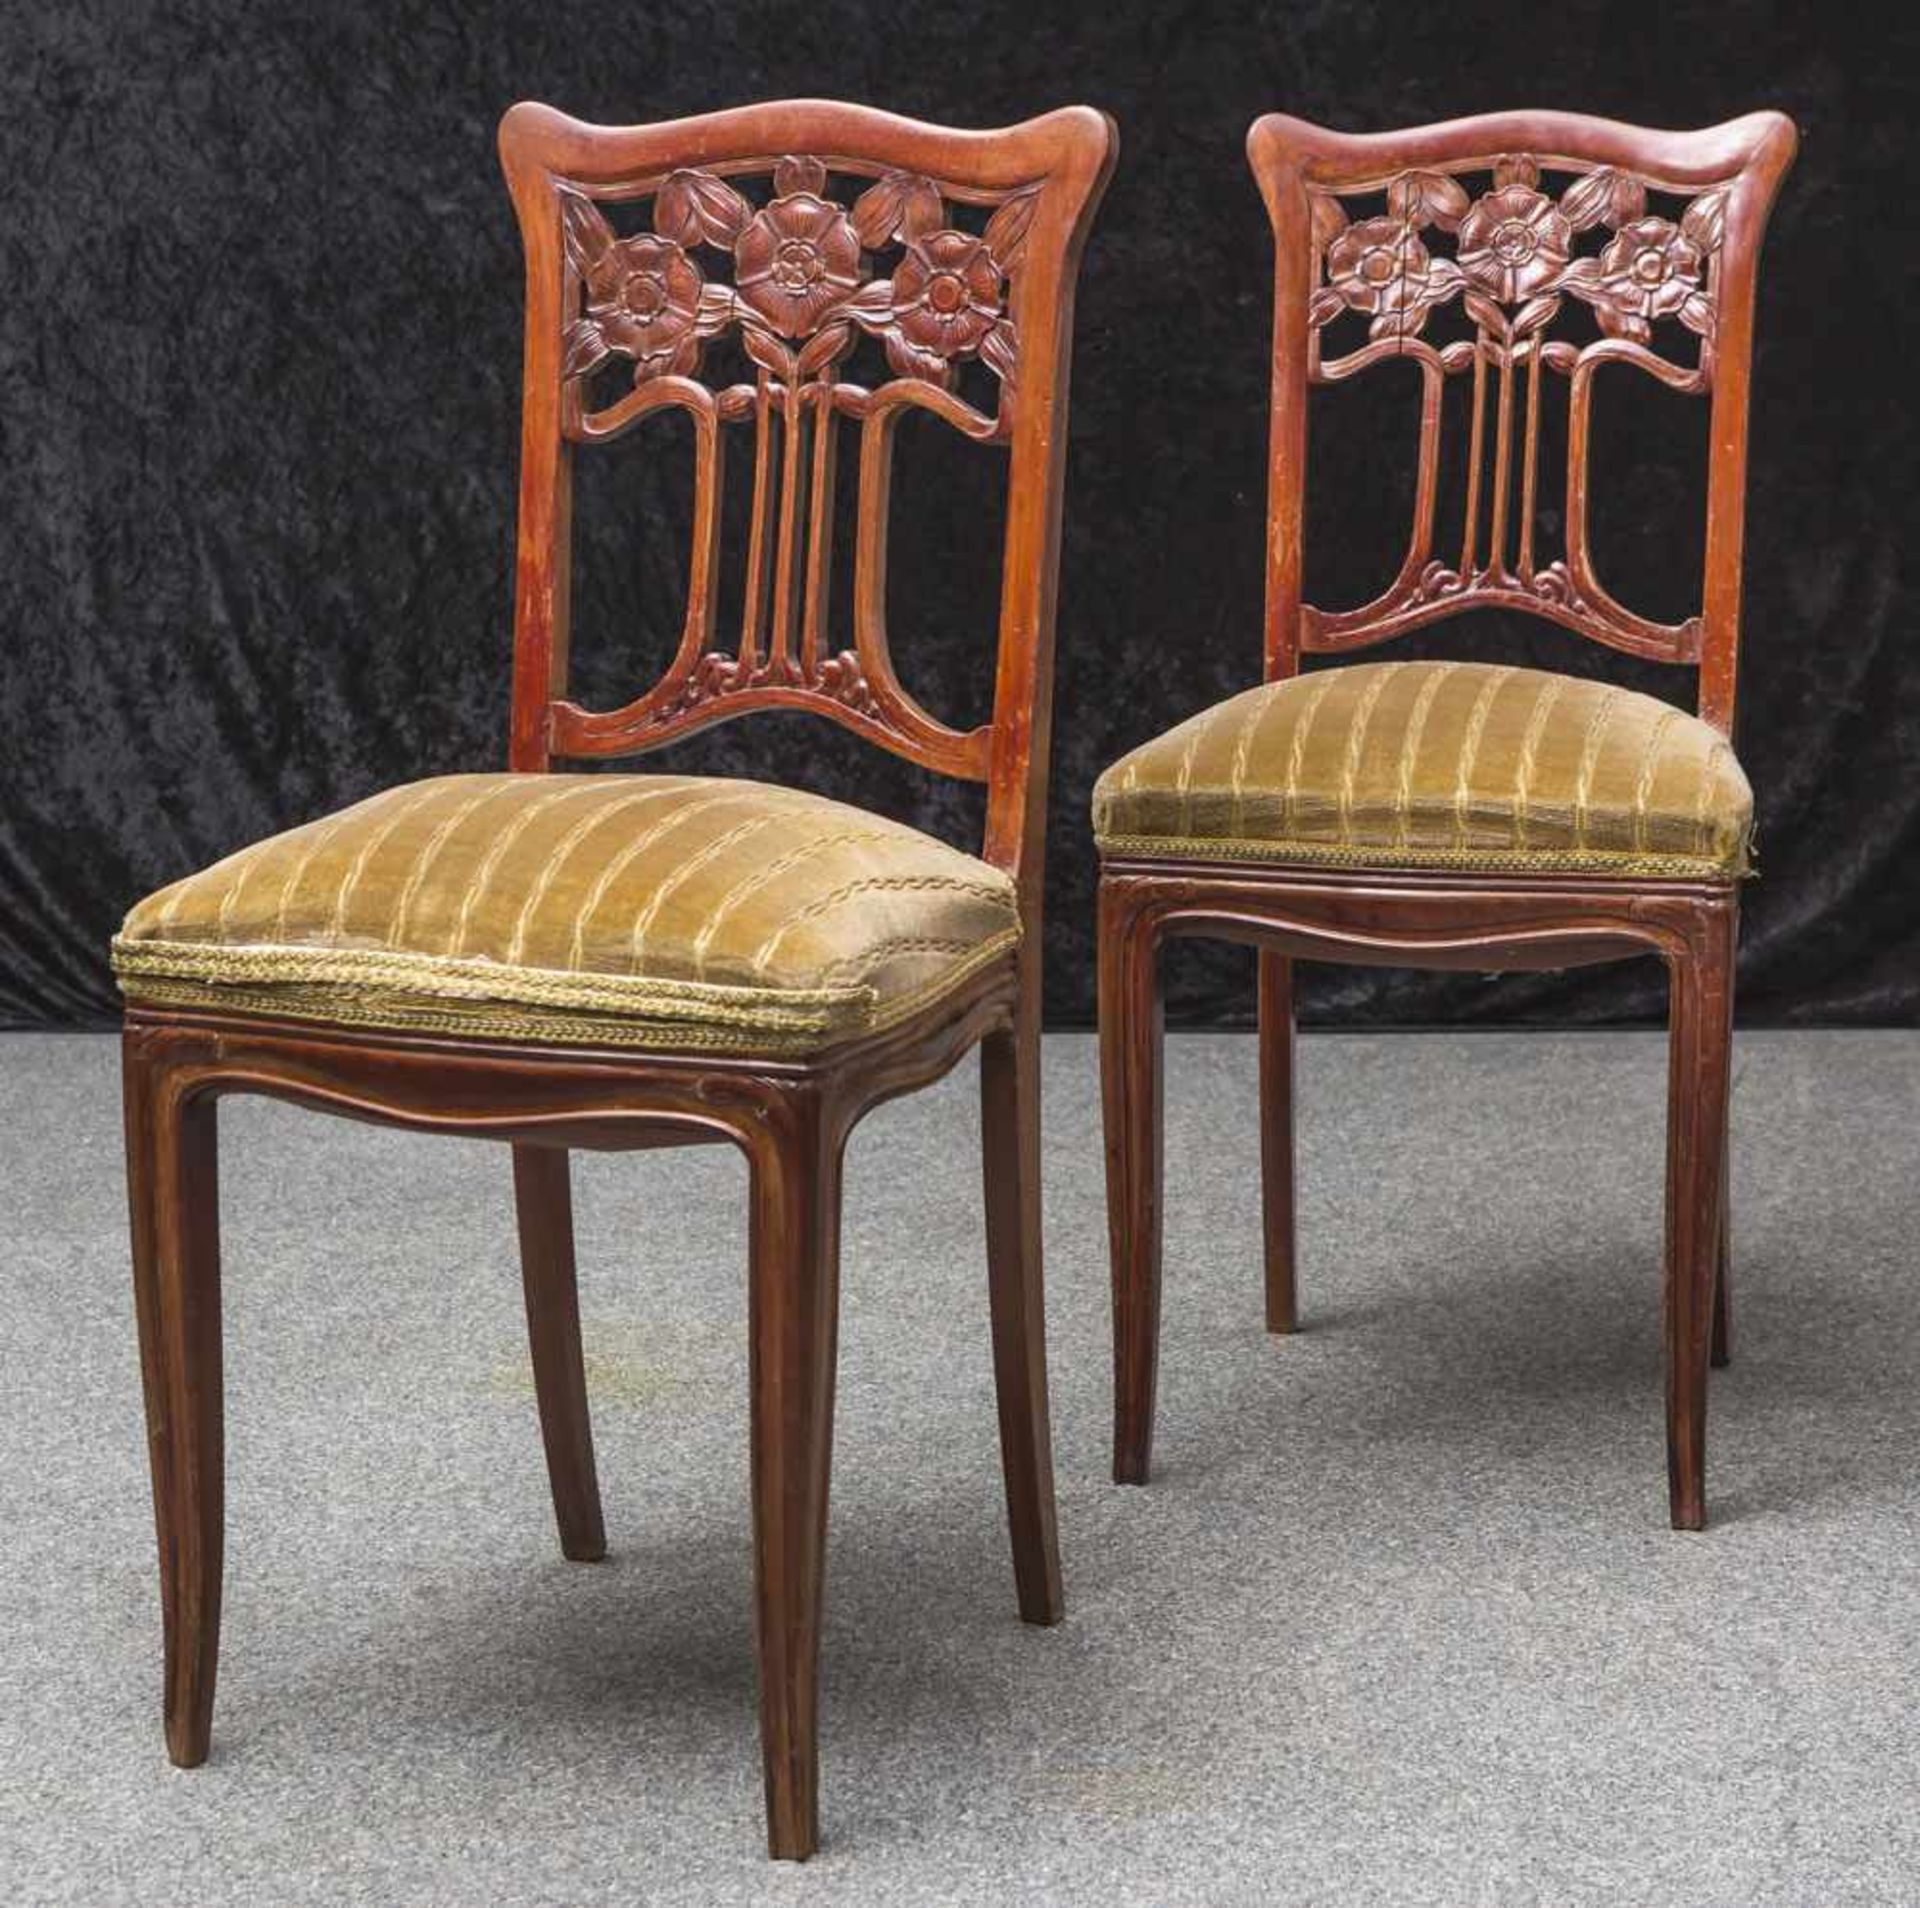 2 Jugendstil-Stühle, um 1900, massives Tropenholz, Rückenlehne floral durchbrochen gearbeitet,